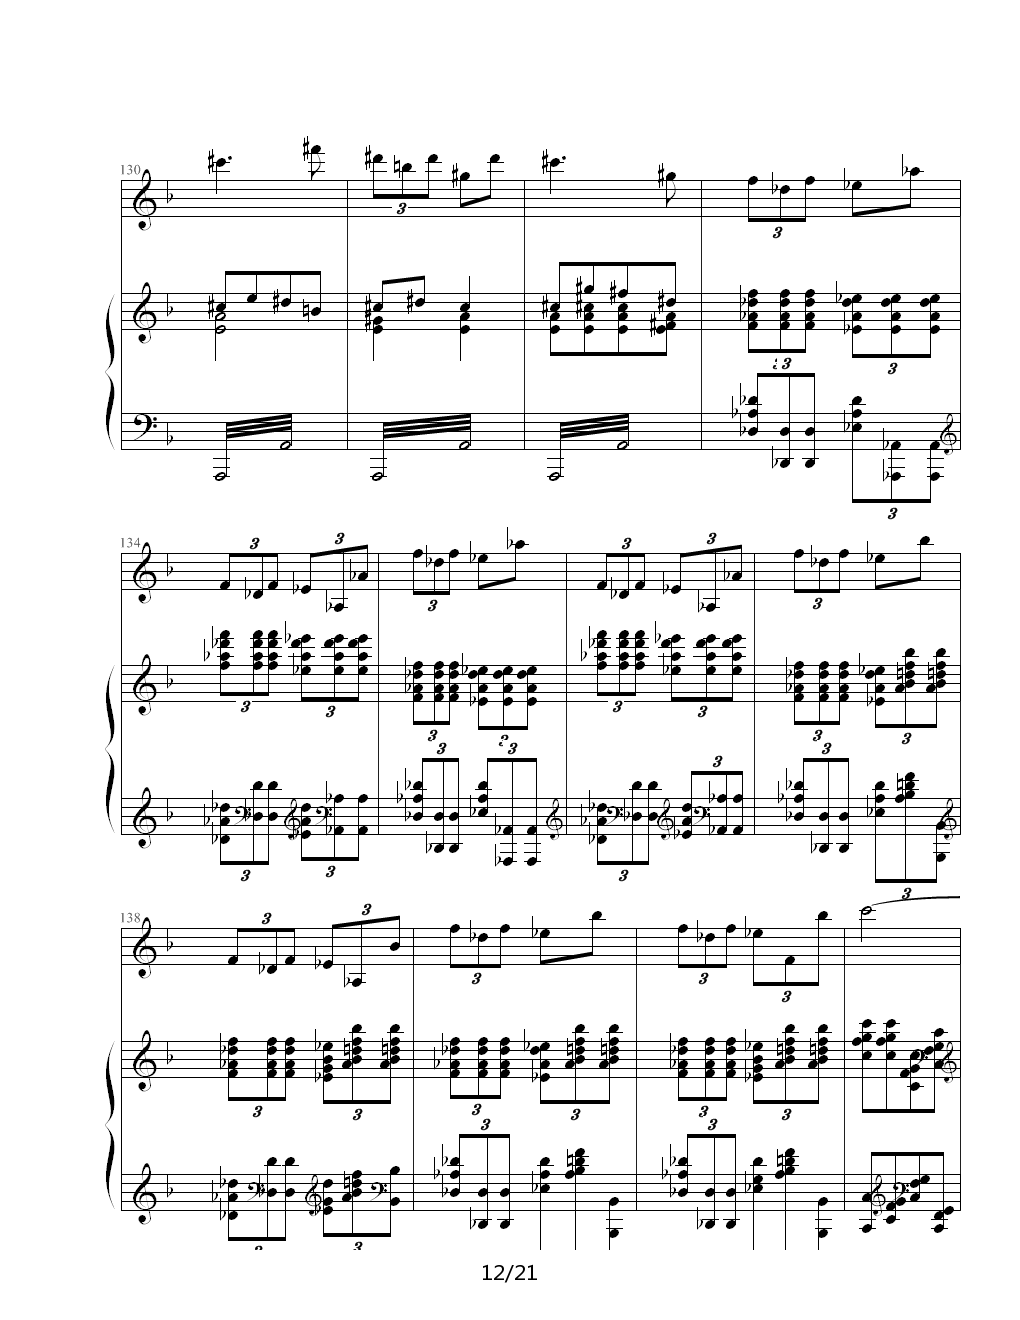 Sonata For Flute and Piano钢琴谱|Sonata For Flute and Piano最新钢琴谱|Sonata For Flute and Piano钢琴谱下载